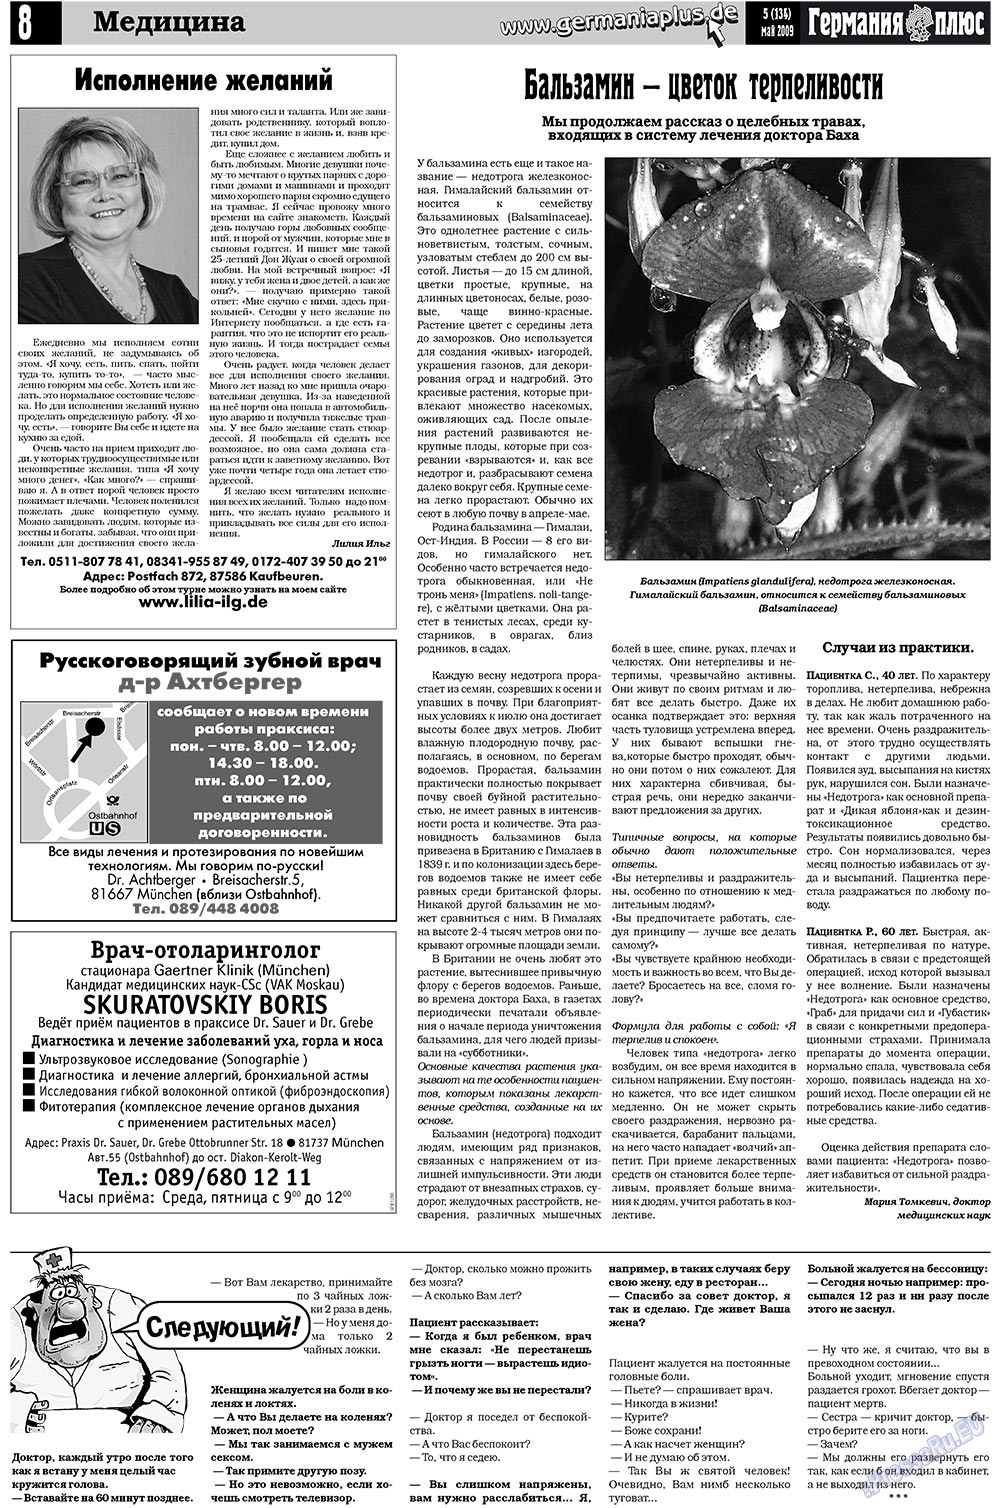 Германия плюс (газета). 2009 год, номер 5, стр. 12